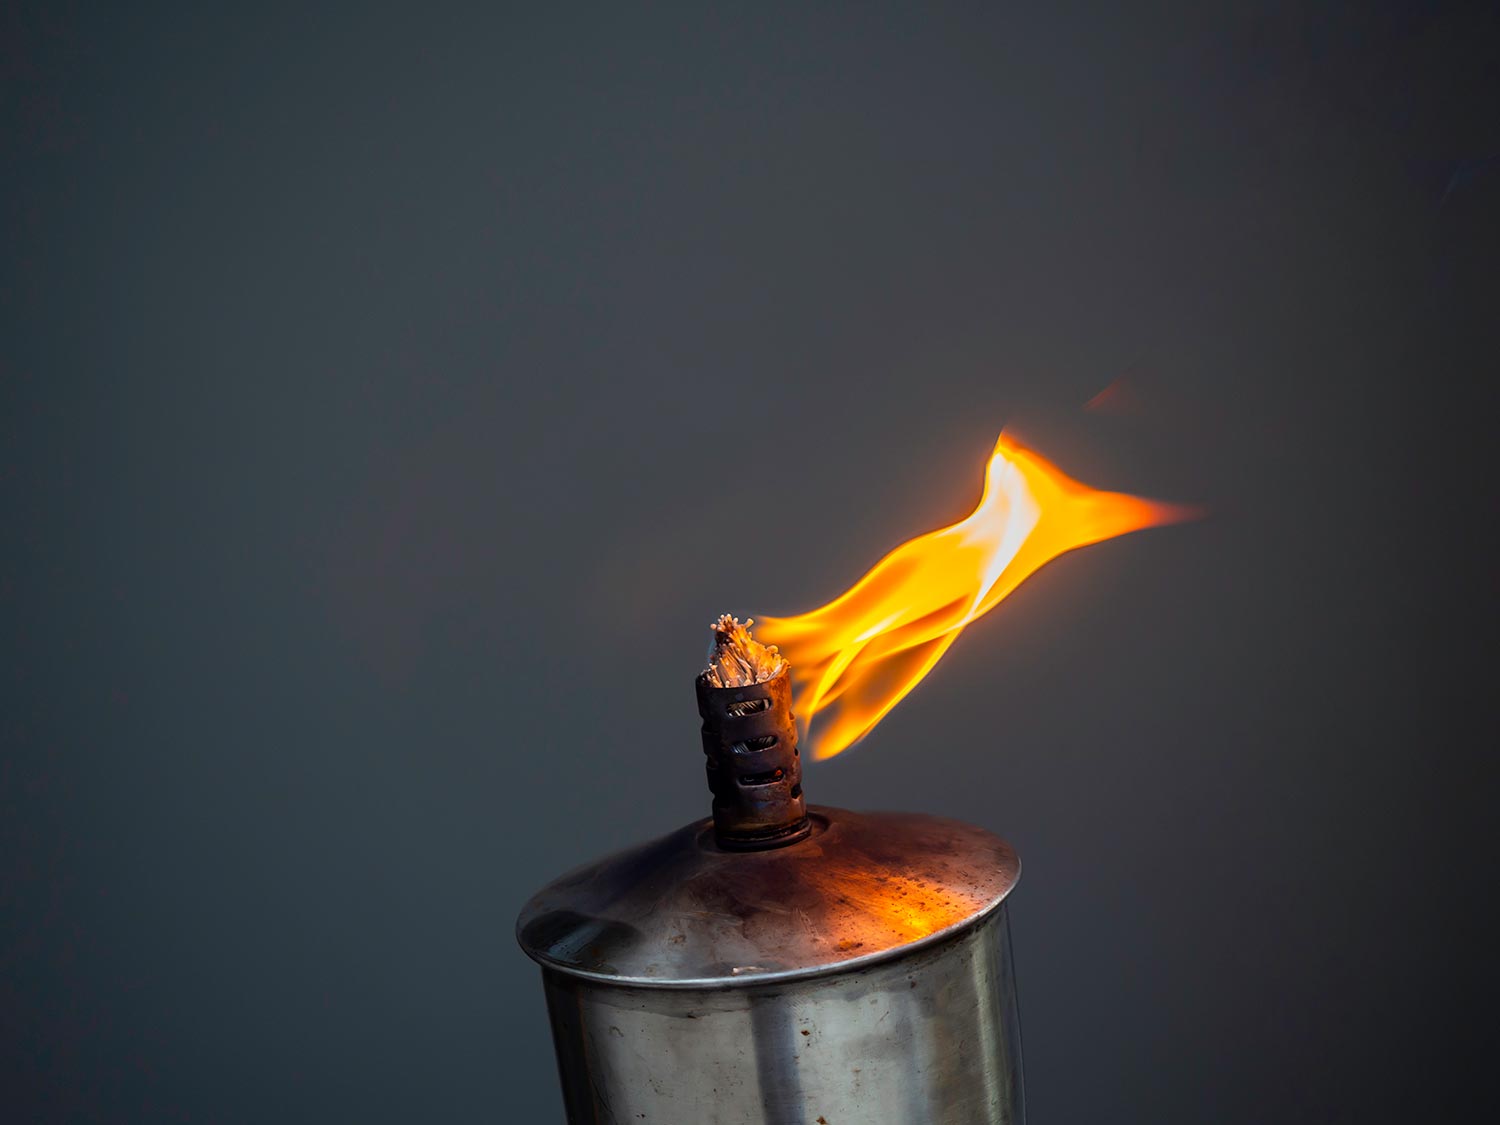 A garden torch flame on dark background